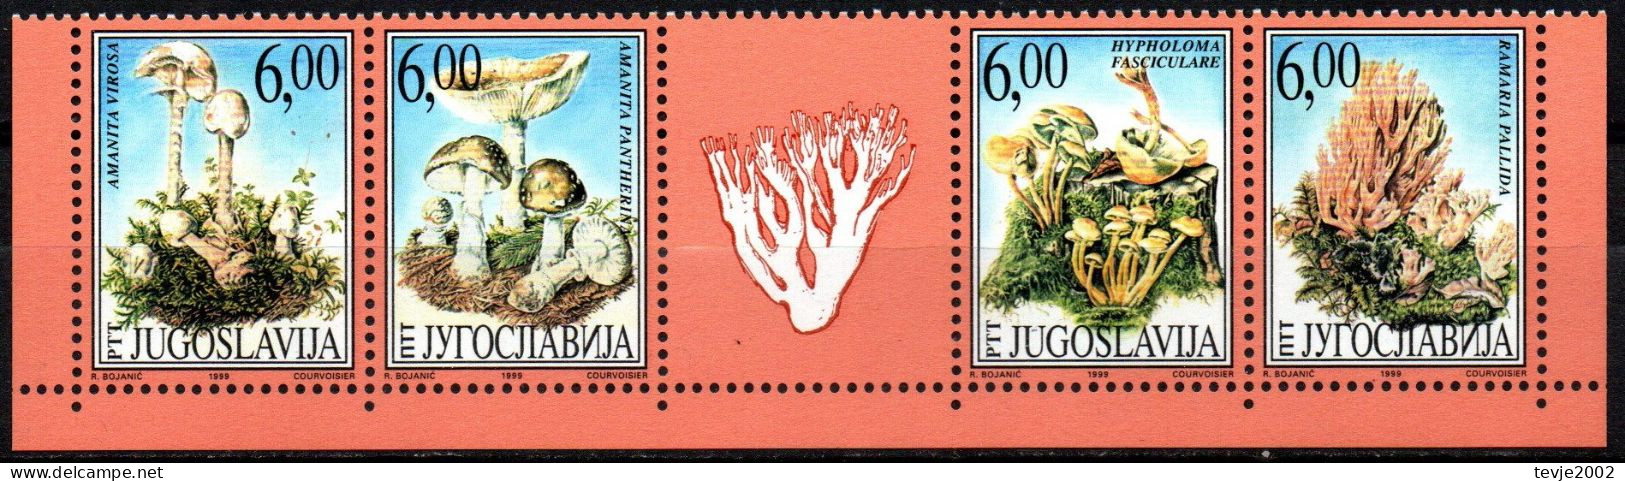 Jugoslawien 1999 - Mi.Nr. 2914 - 2917 - Postfrisch MNH - Pilze Mushrooms - Champignons